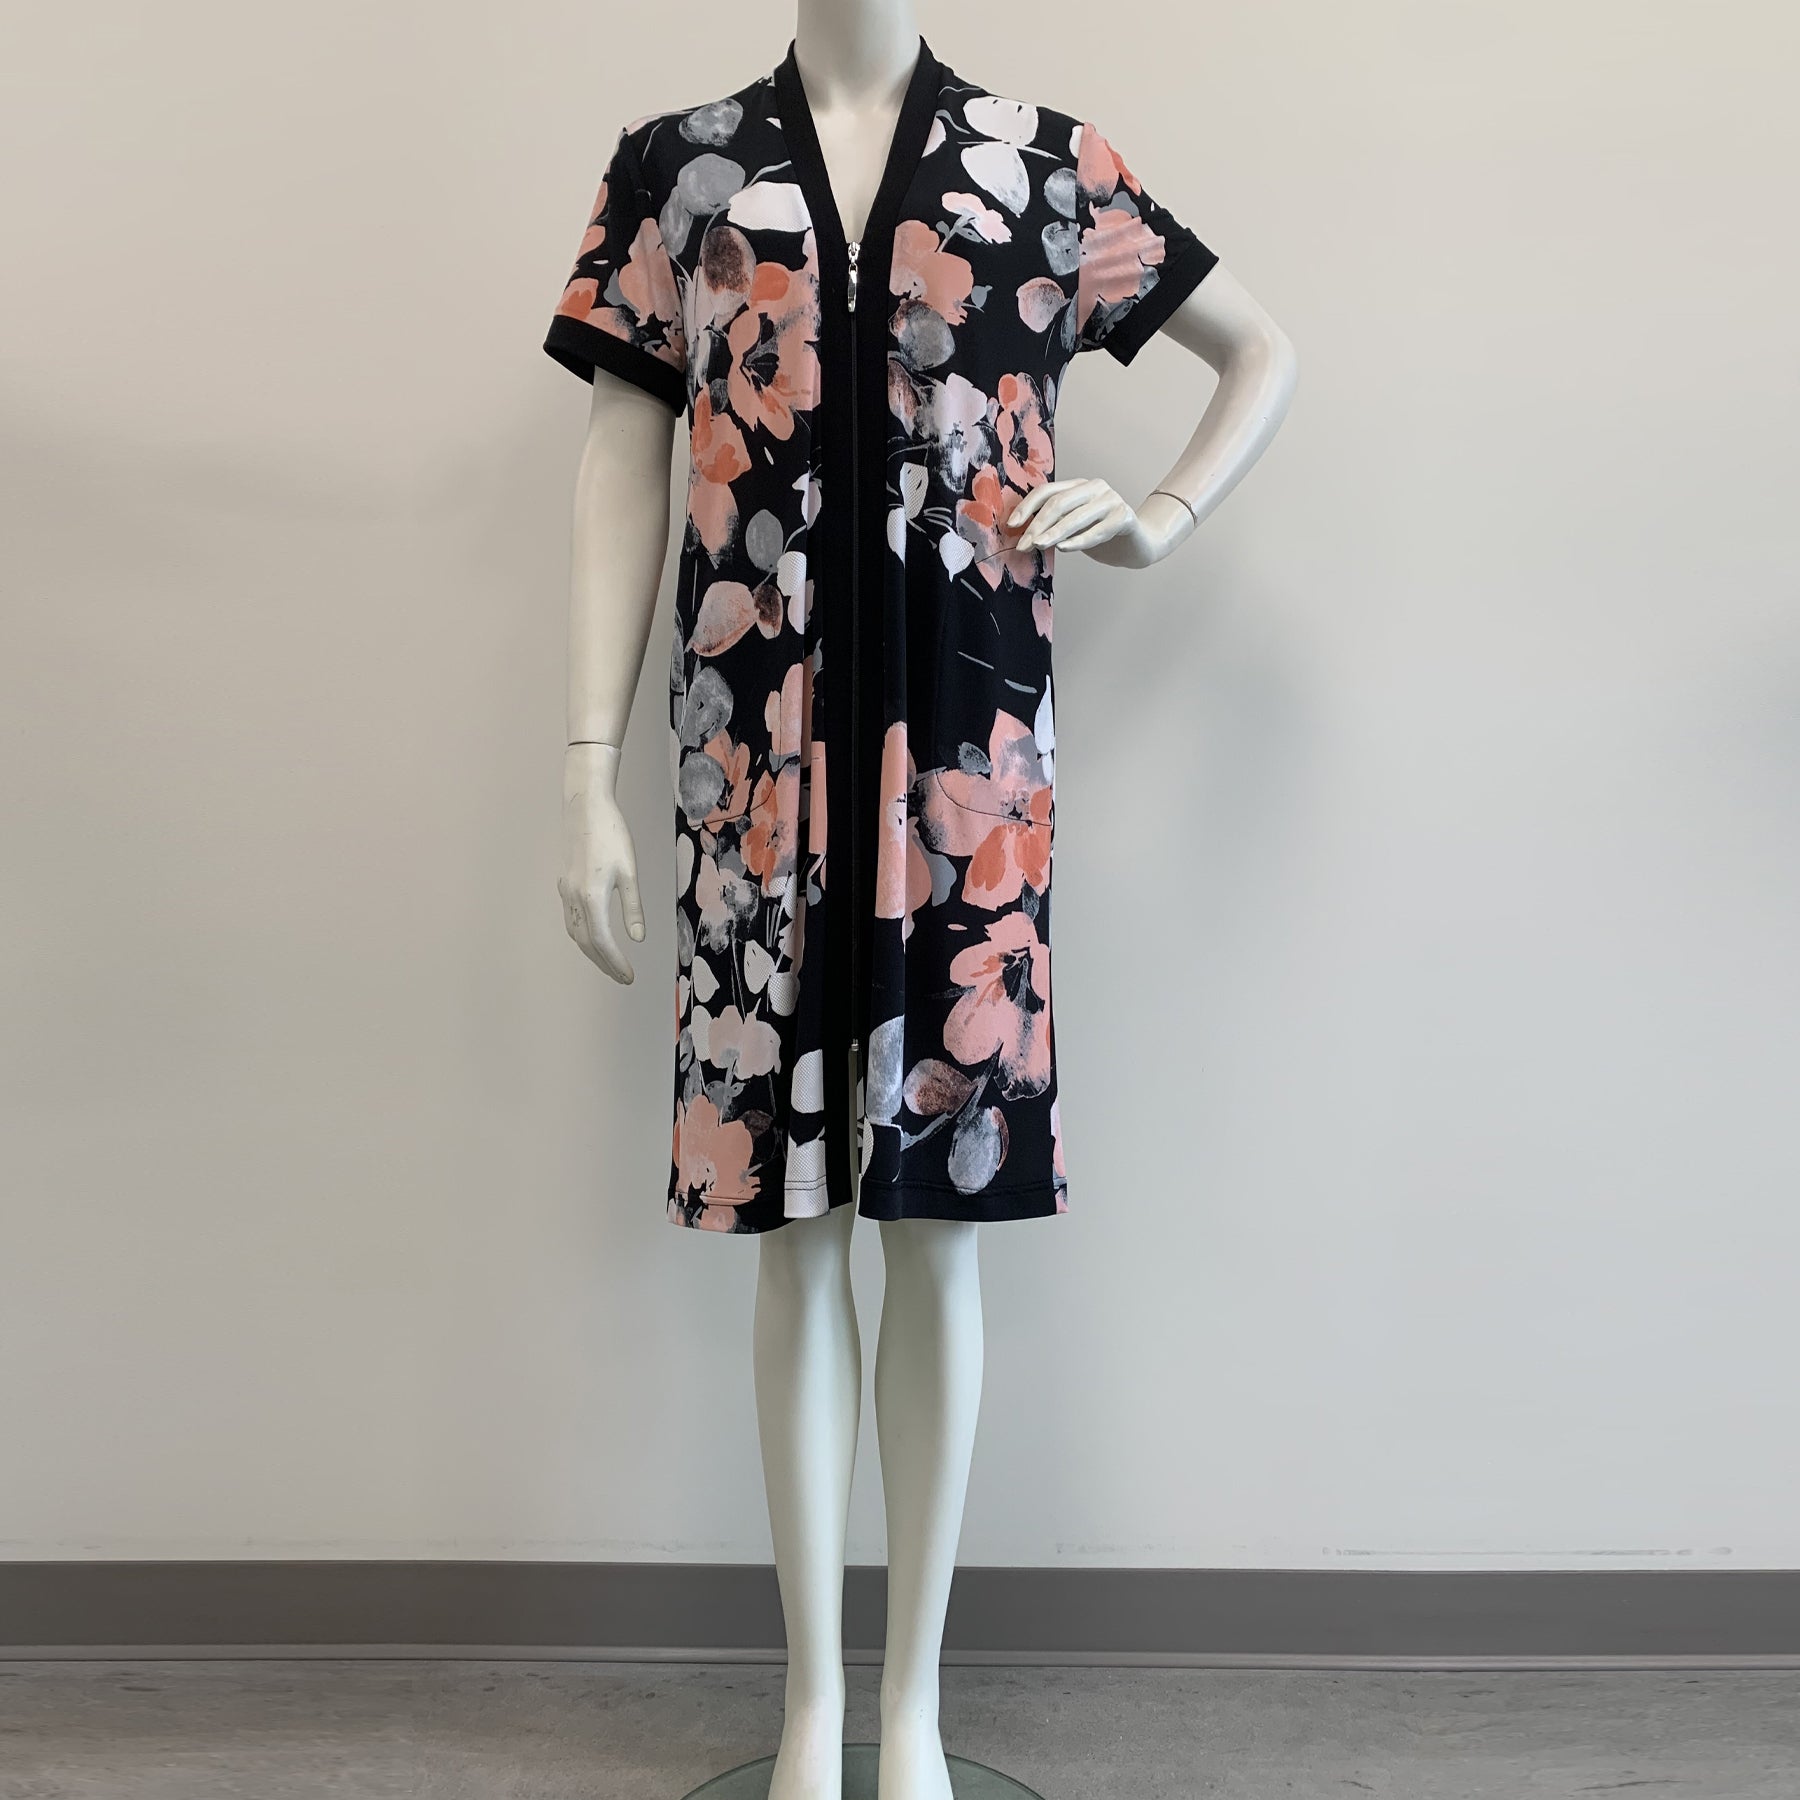 Plus Size Designer Carole Hochman Cotton Knit Kimono Loungewear Robes